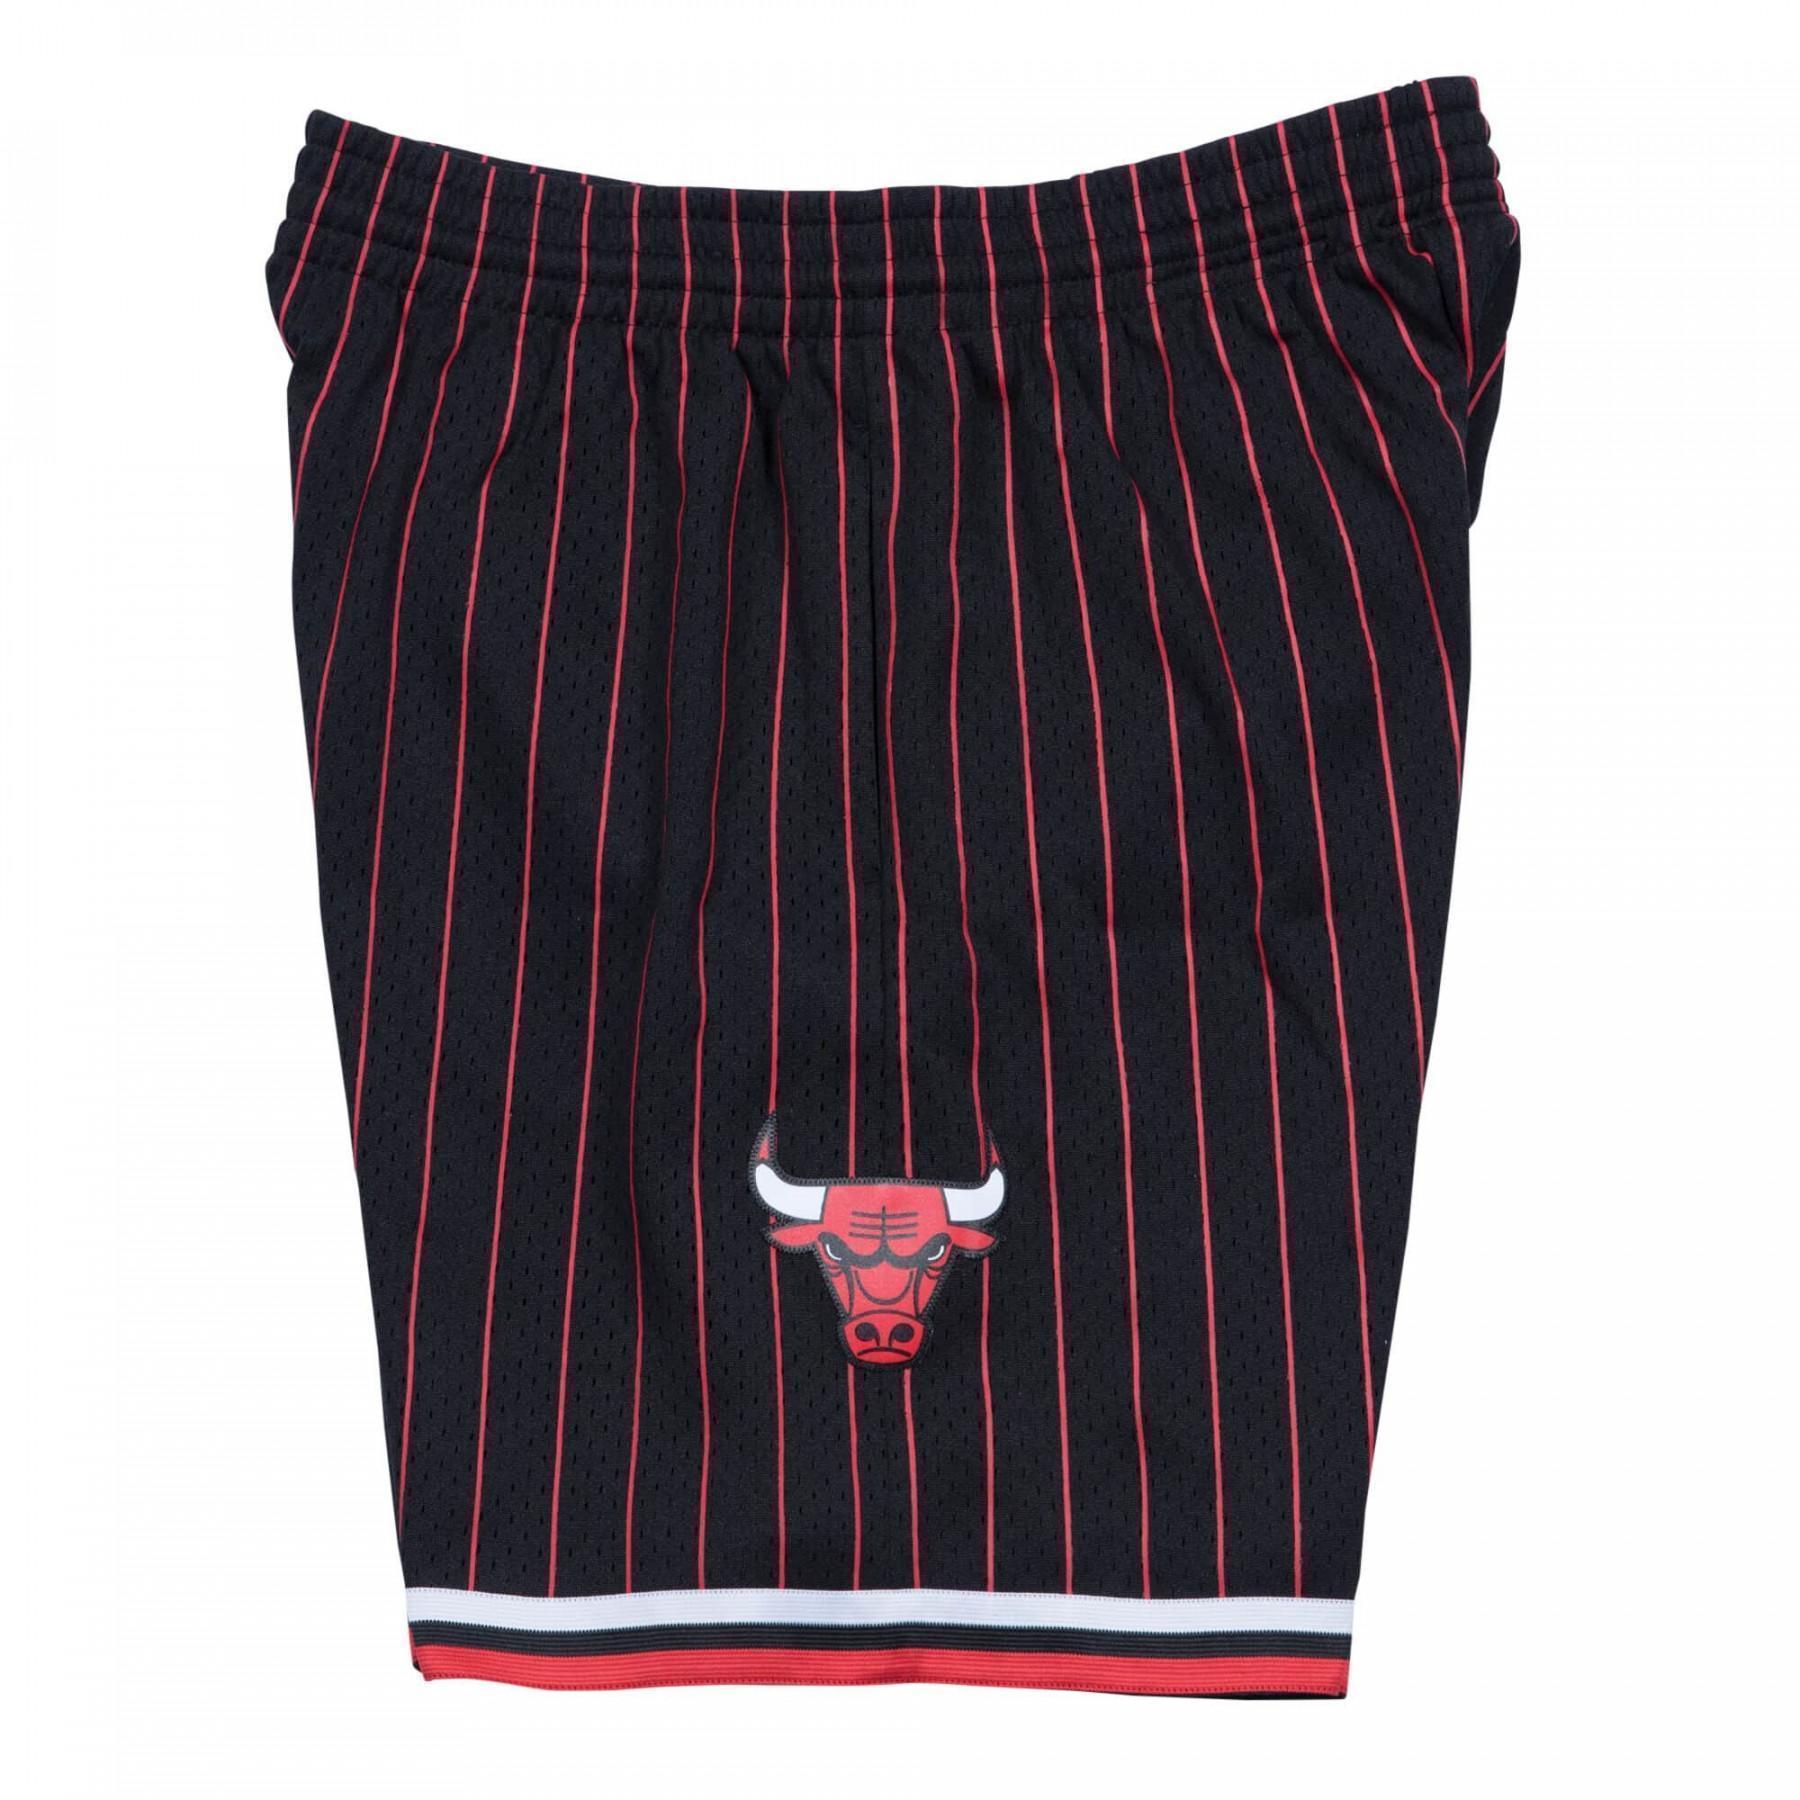 Nba swingman shorts Chicago Bulls